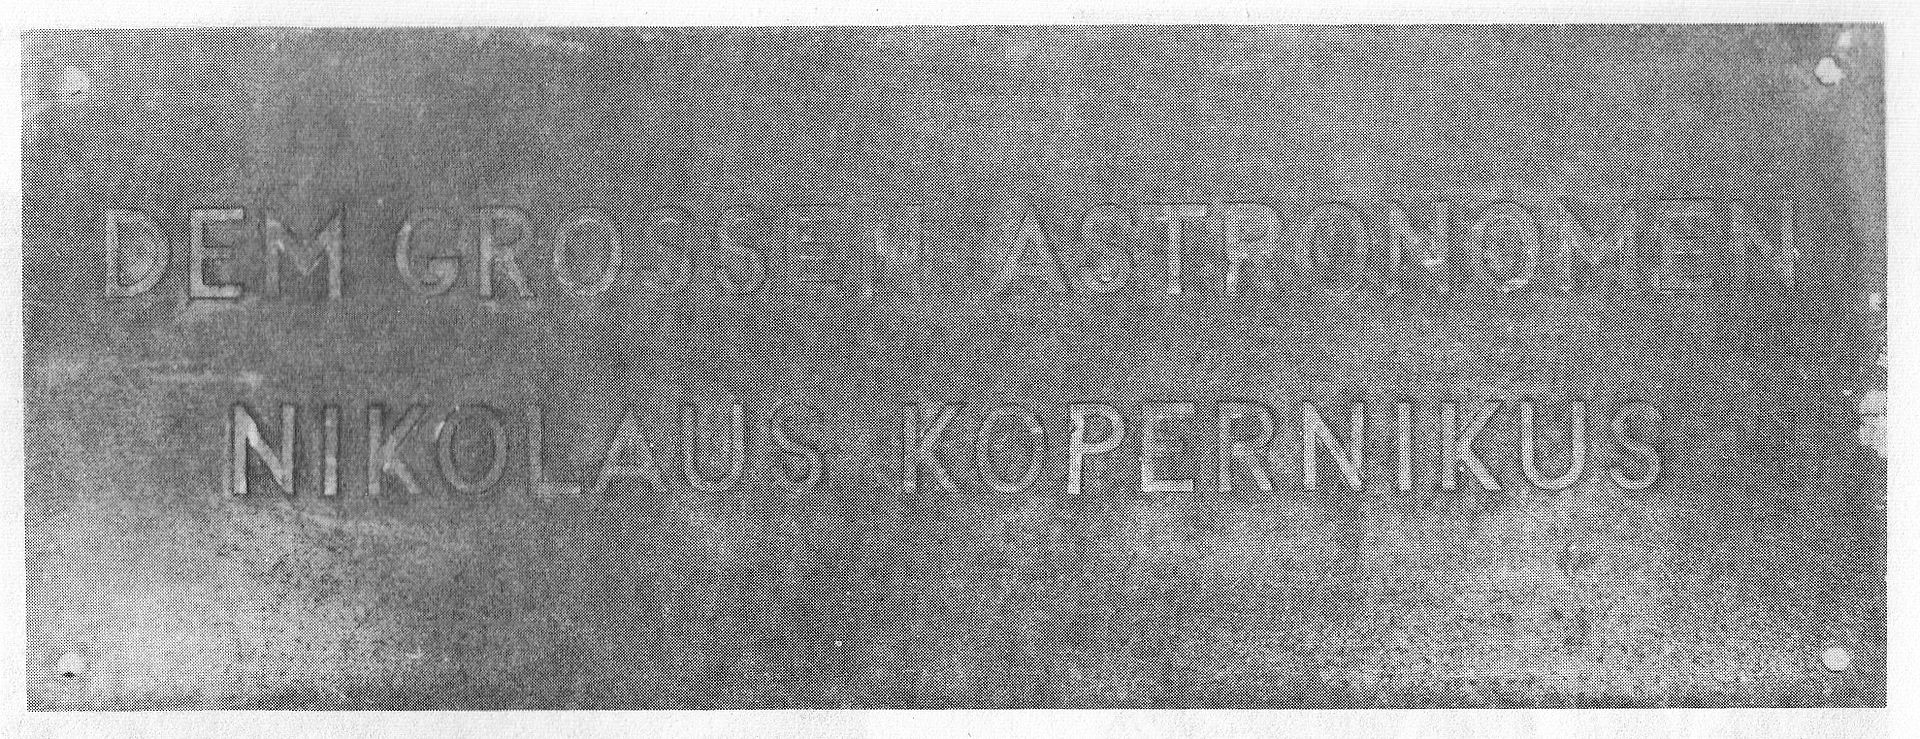 Tablica "DEM GROSSEN ASTRONOMEN NIKOLAUS KOPERNIKUS" umieszczona na rozkaz Niemców w 1942 roku